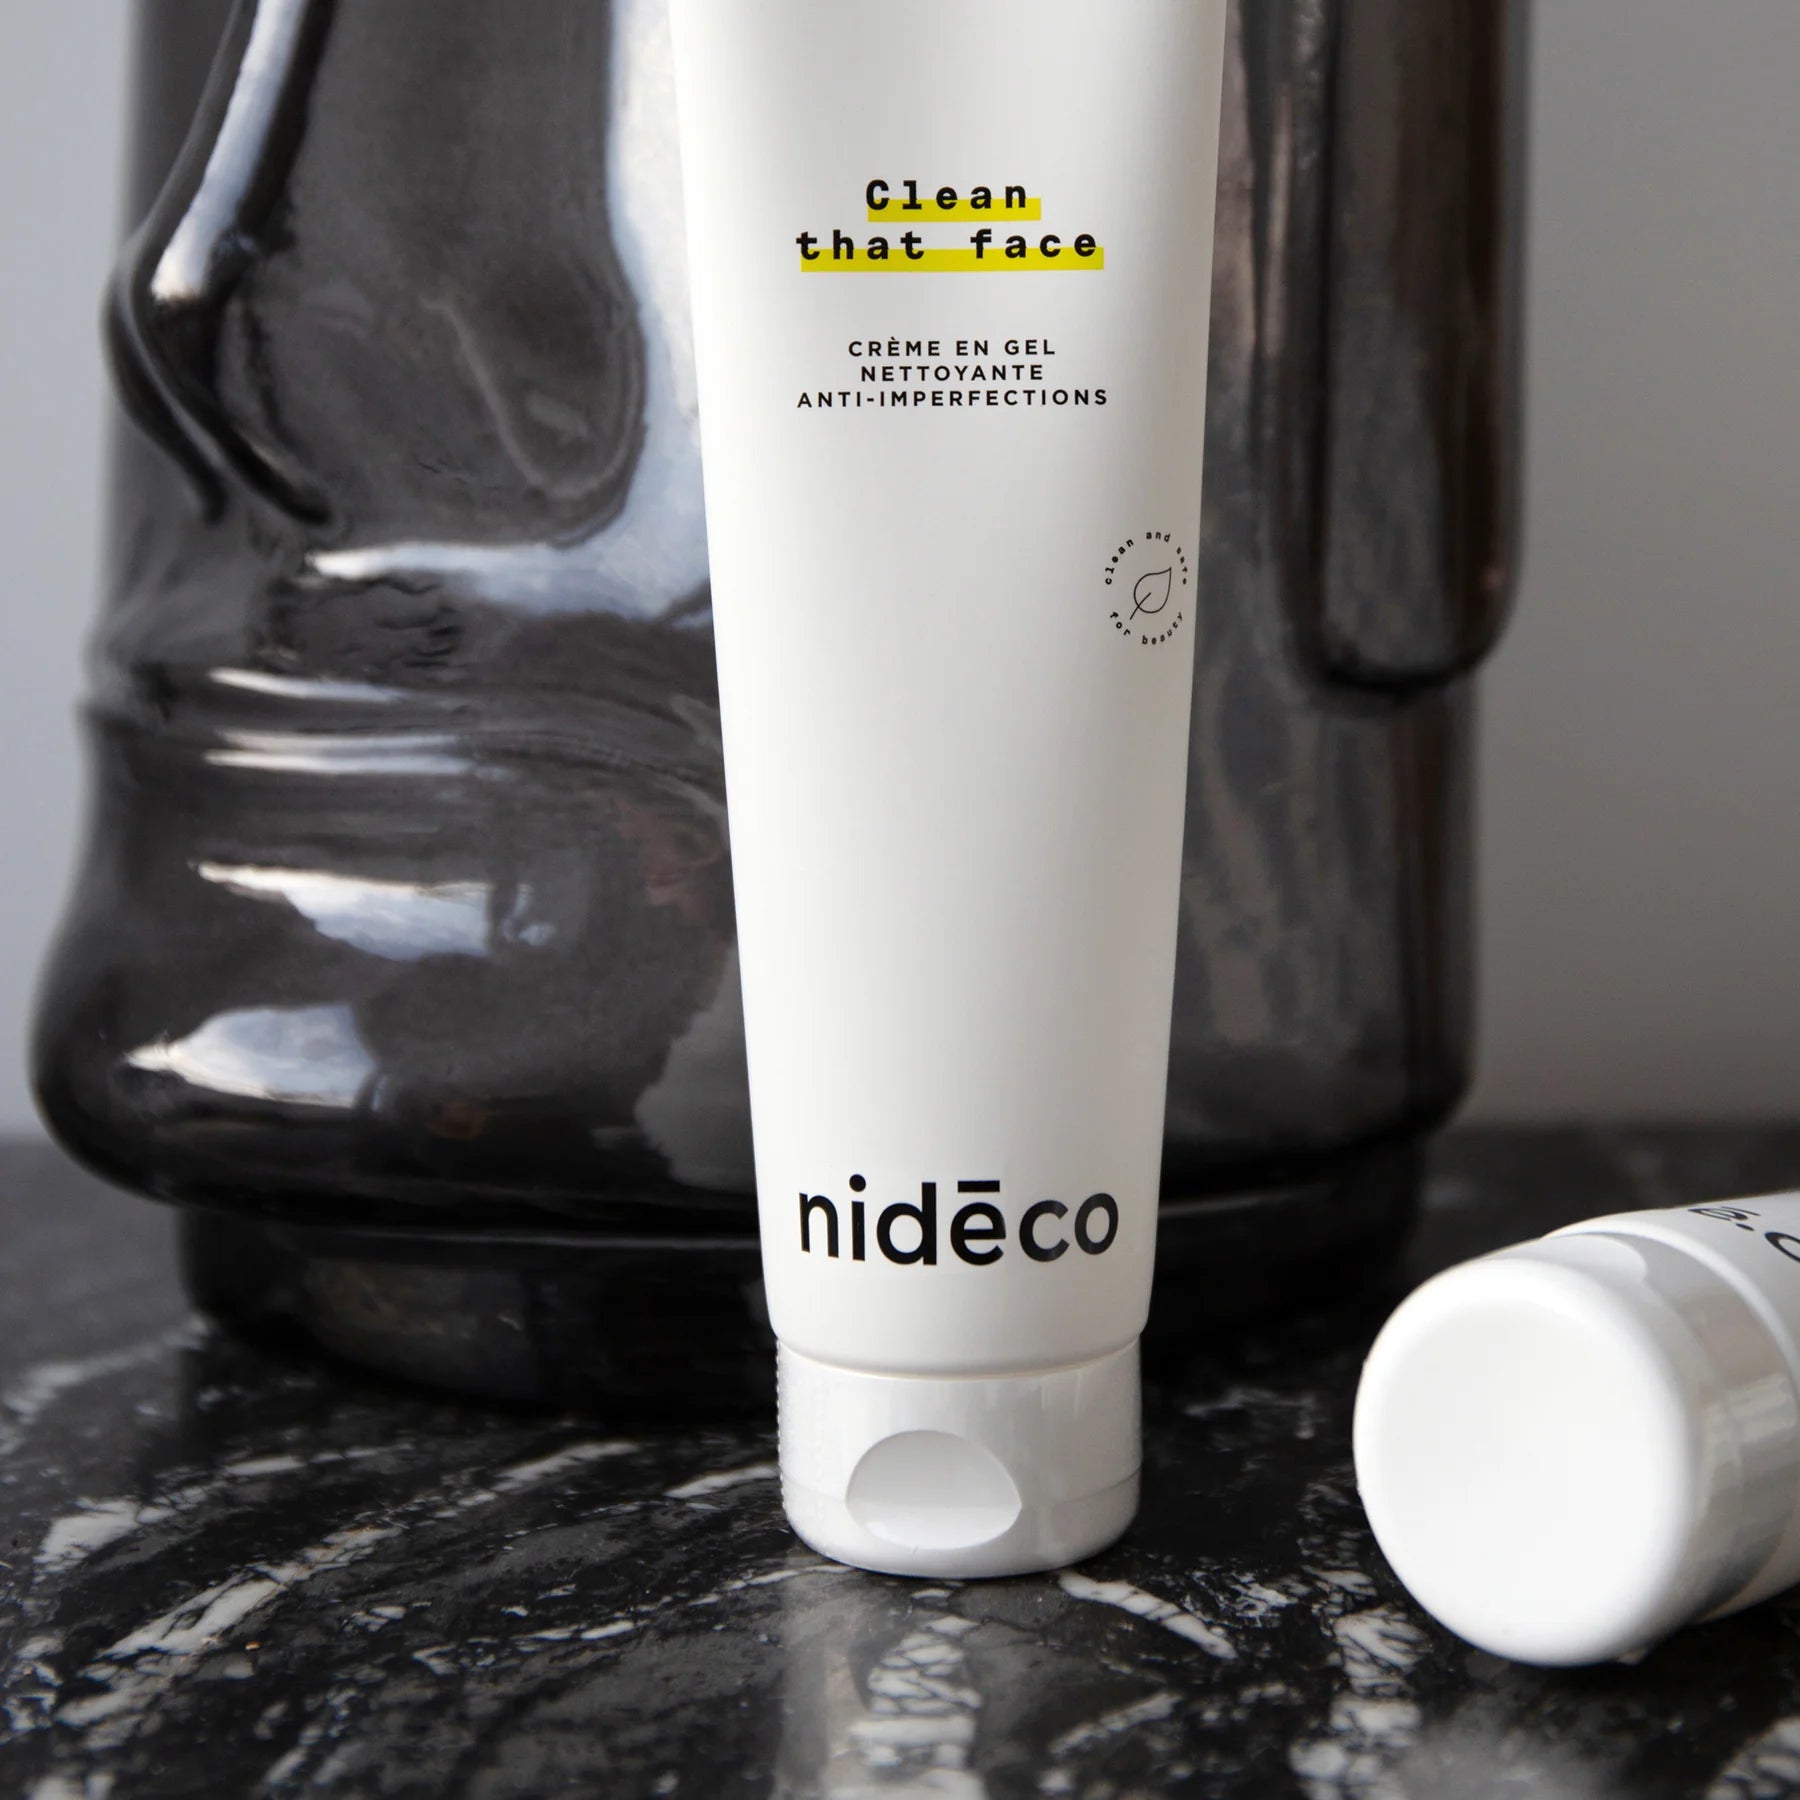 Clean that face gel nettoyant et rééquilibrant pour le visage anti-imperfections de NIdéco dans de la mousse